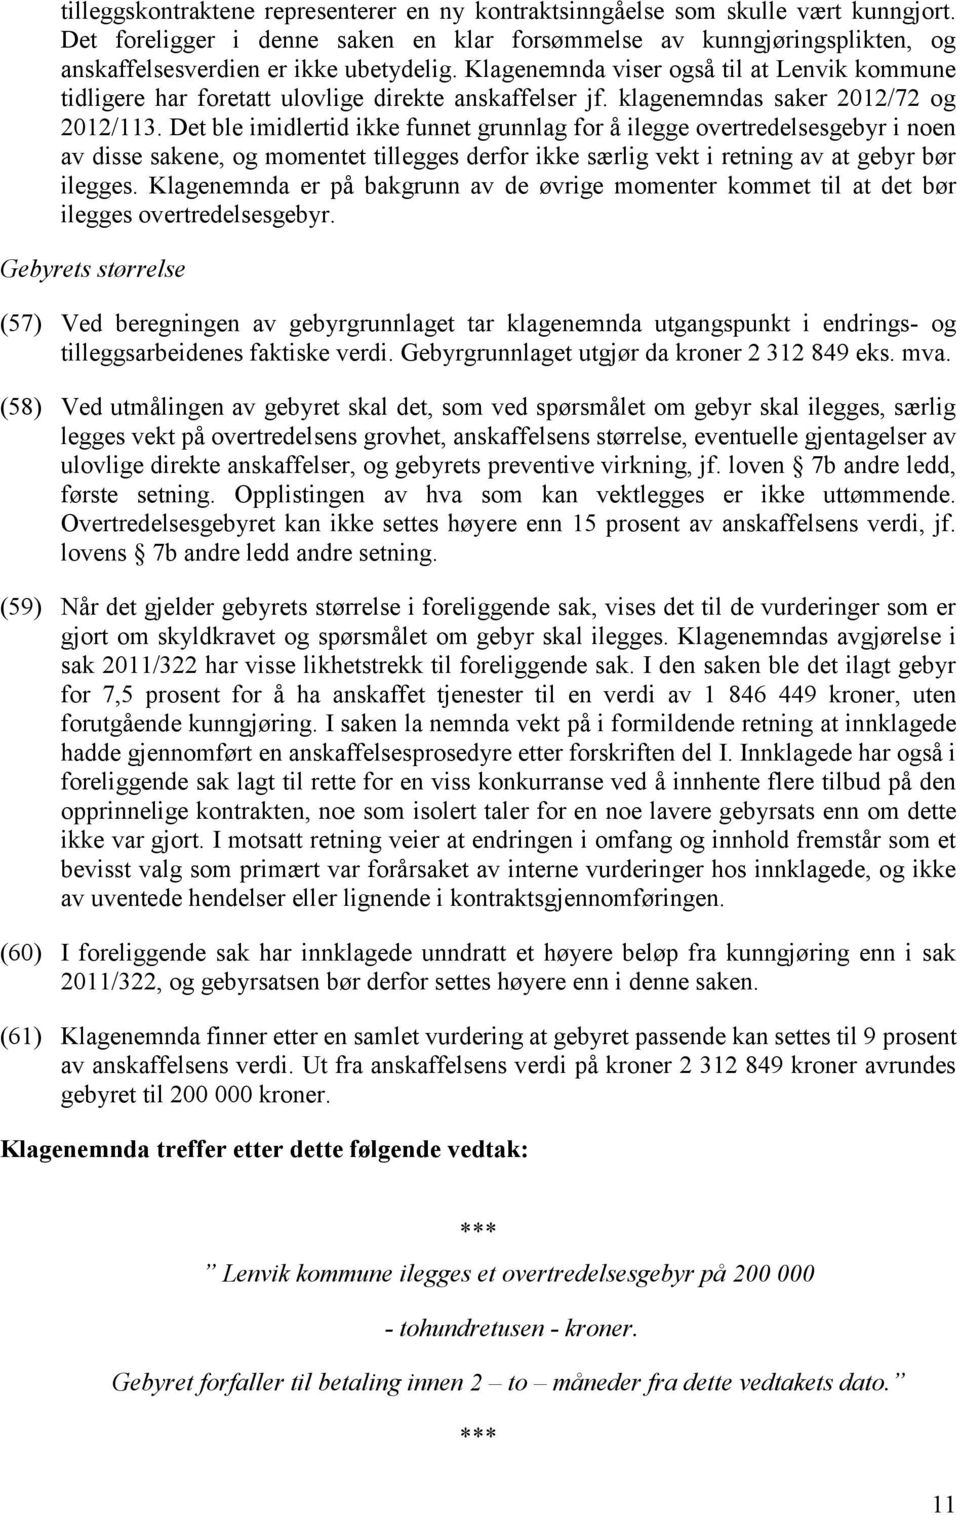 Klagenemnda viser også til at Lenvik kommune tidligere har foretatt ulovlige direkte anskaffelser jf. klagenemndas saker 2012/72 og 2012/113.